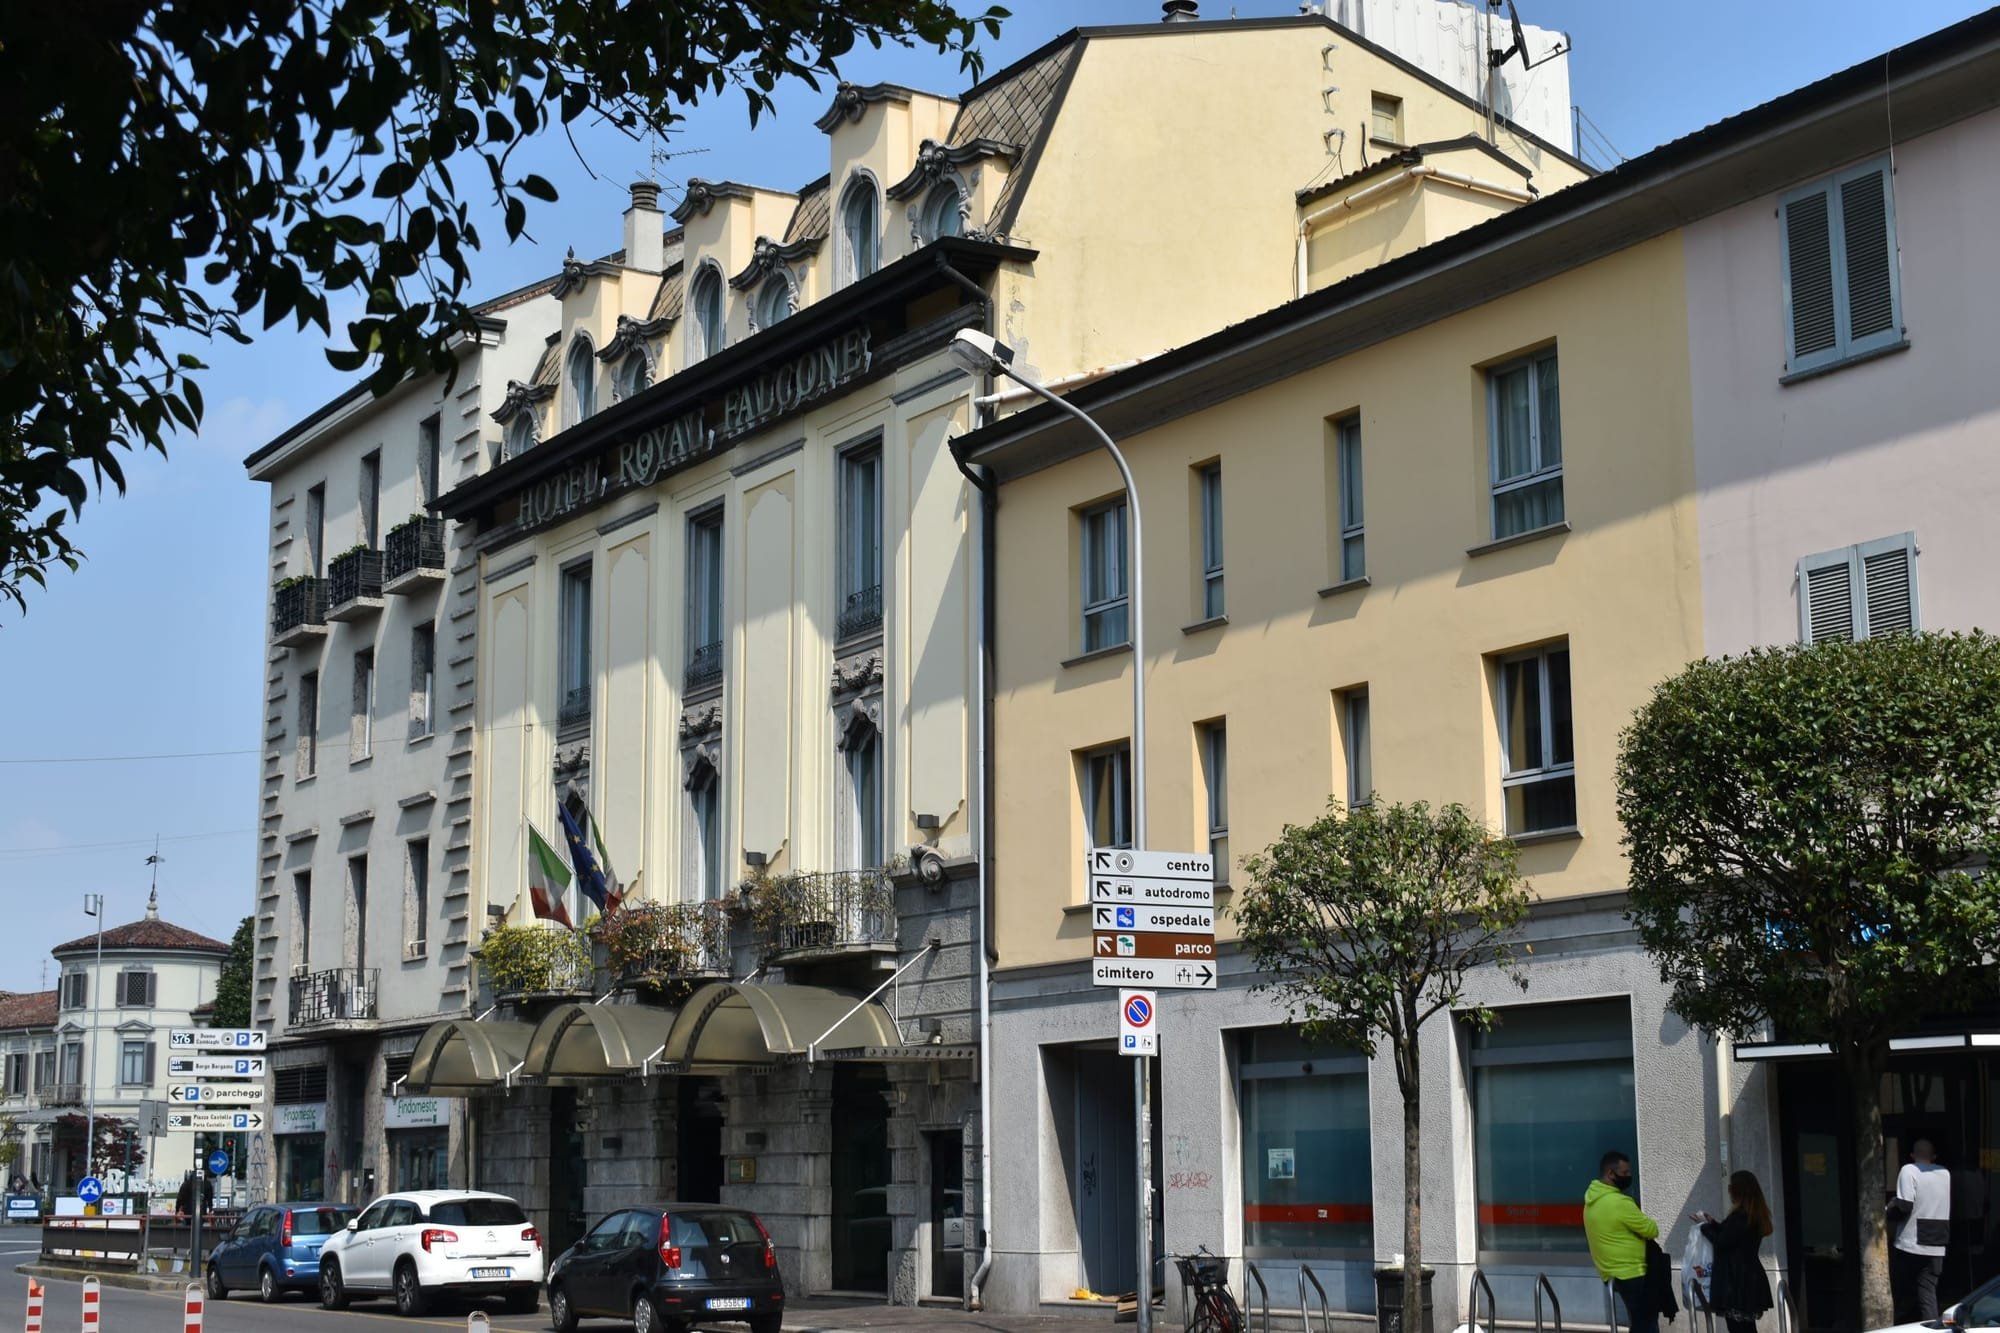 Hotel Falcone, Monza